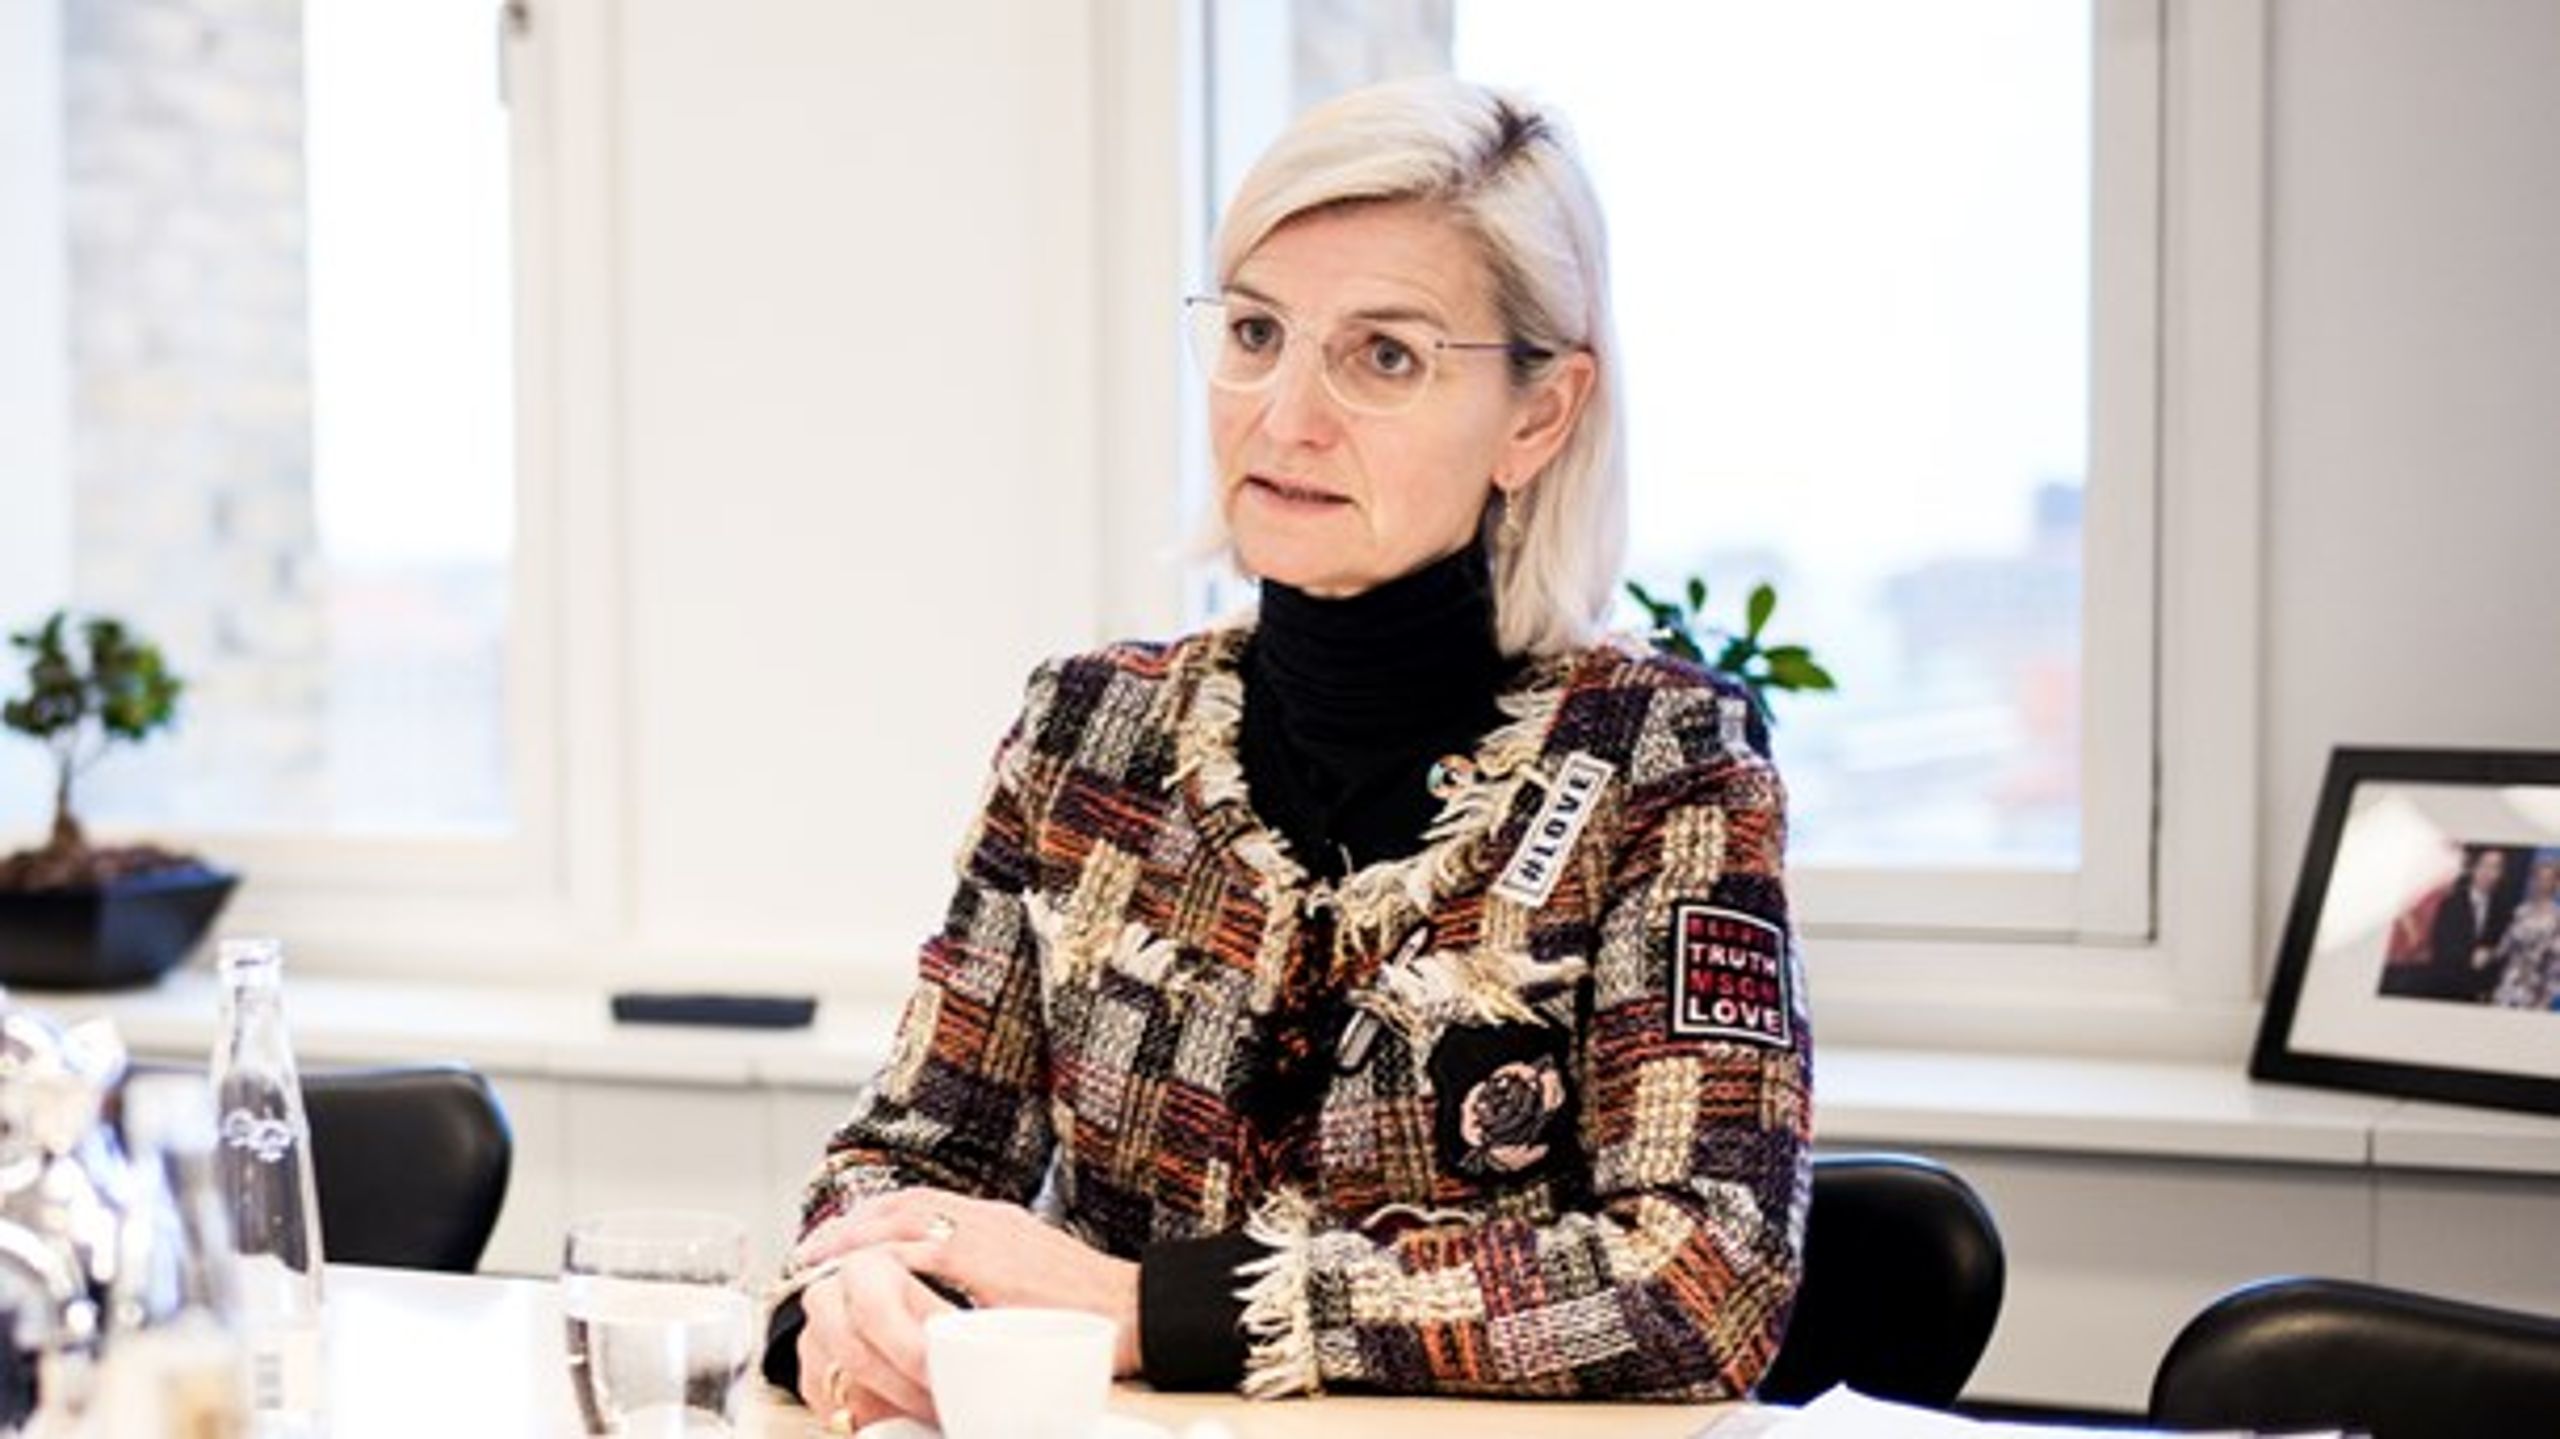 Konkurrenceudsættelsen er en fair og gennemsigtig måde at fordele dansk ngo-støtte til internationalt hjælpearbejde, mener udviklingsminister Ulla Tørnæs (V).